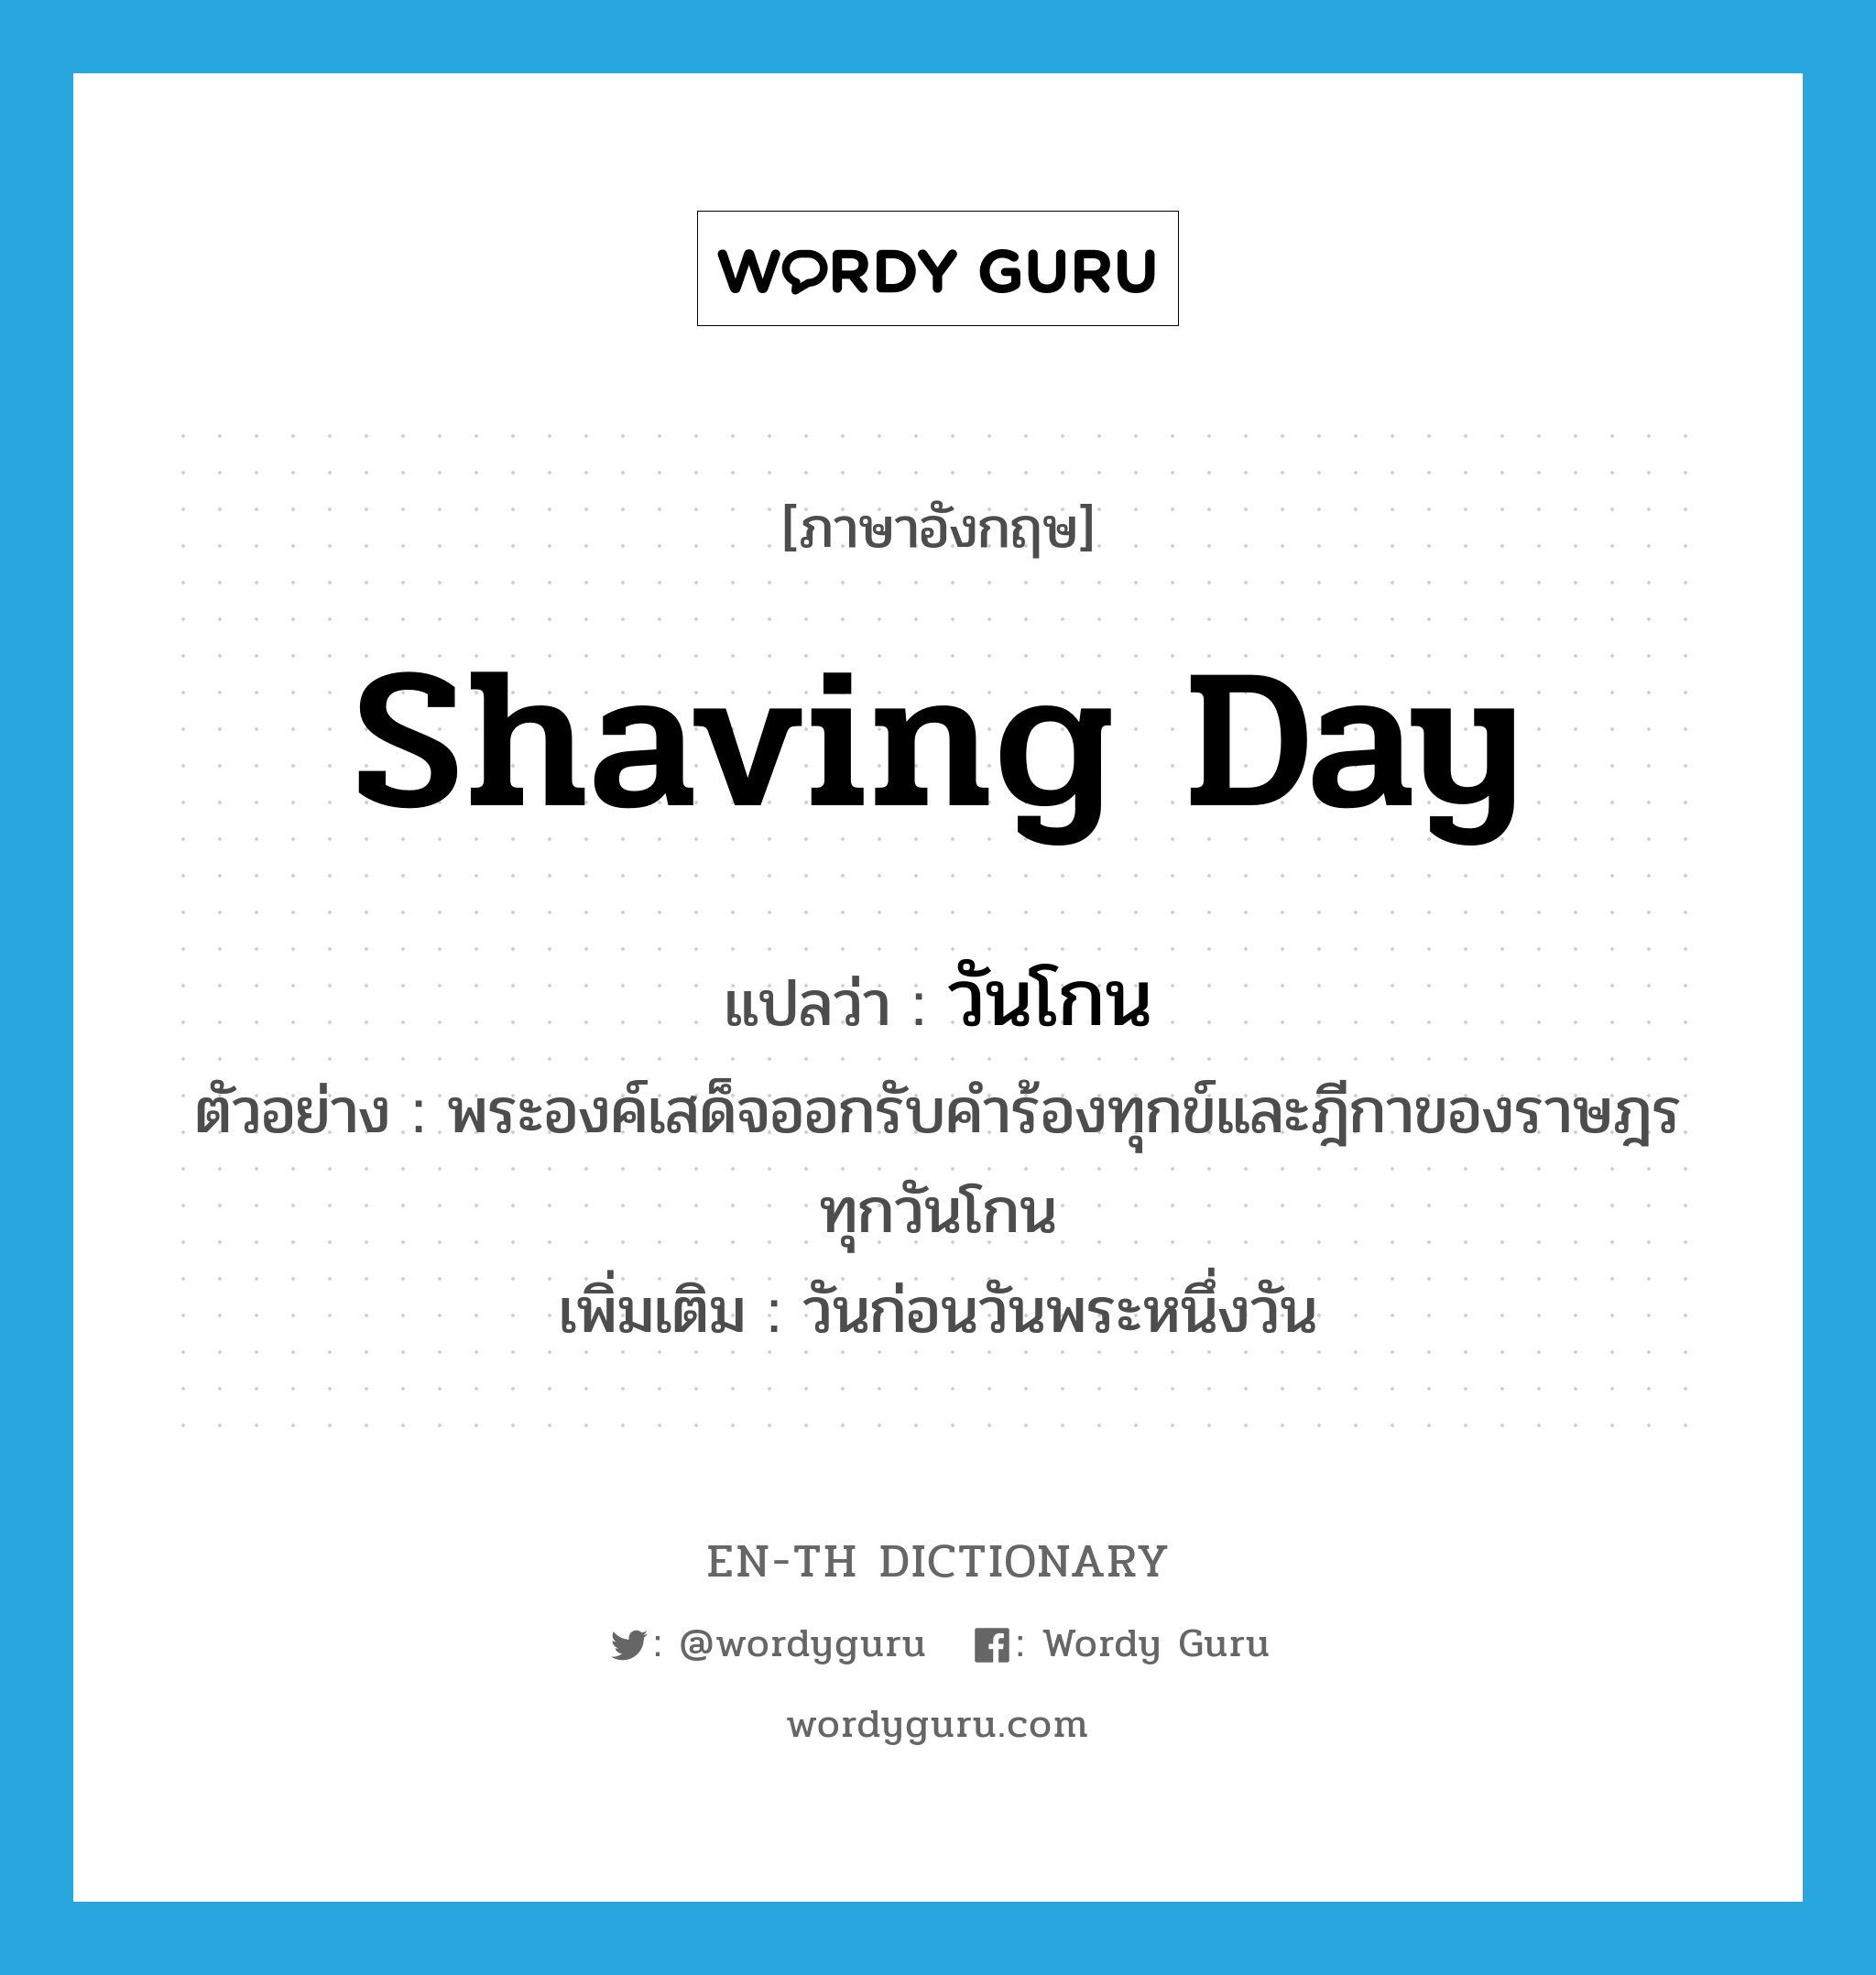 วันโกน ภาษาอังกฤษ?, คำศัพท์ภาษาอังกฤษ วันโกน แปลว่า Shaving Day ประเภท N ตัวอย่าง พระองค์เสด็จออกรับคำร้องทุกข์และฎีกาของราษฎรทุกวันโกน เพิ่มเติม วันก่อนวันพระหนึ่งวัน หมวด N